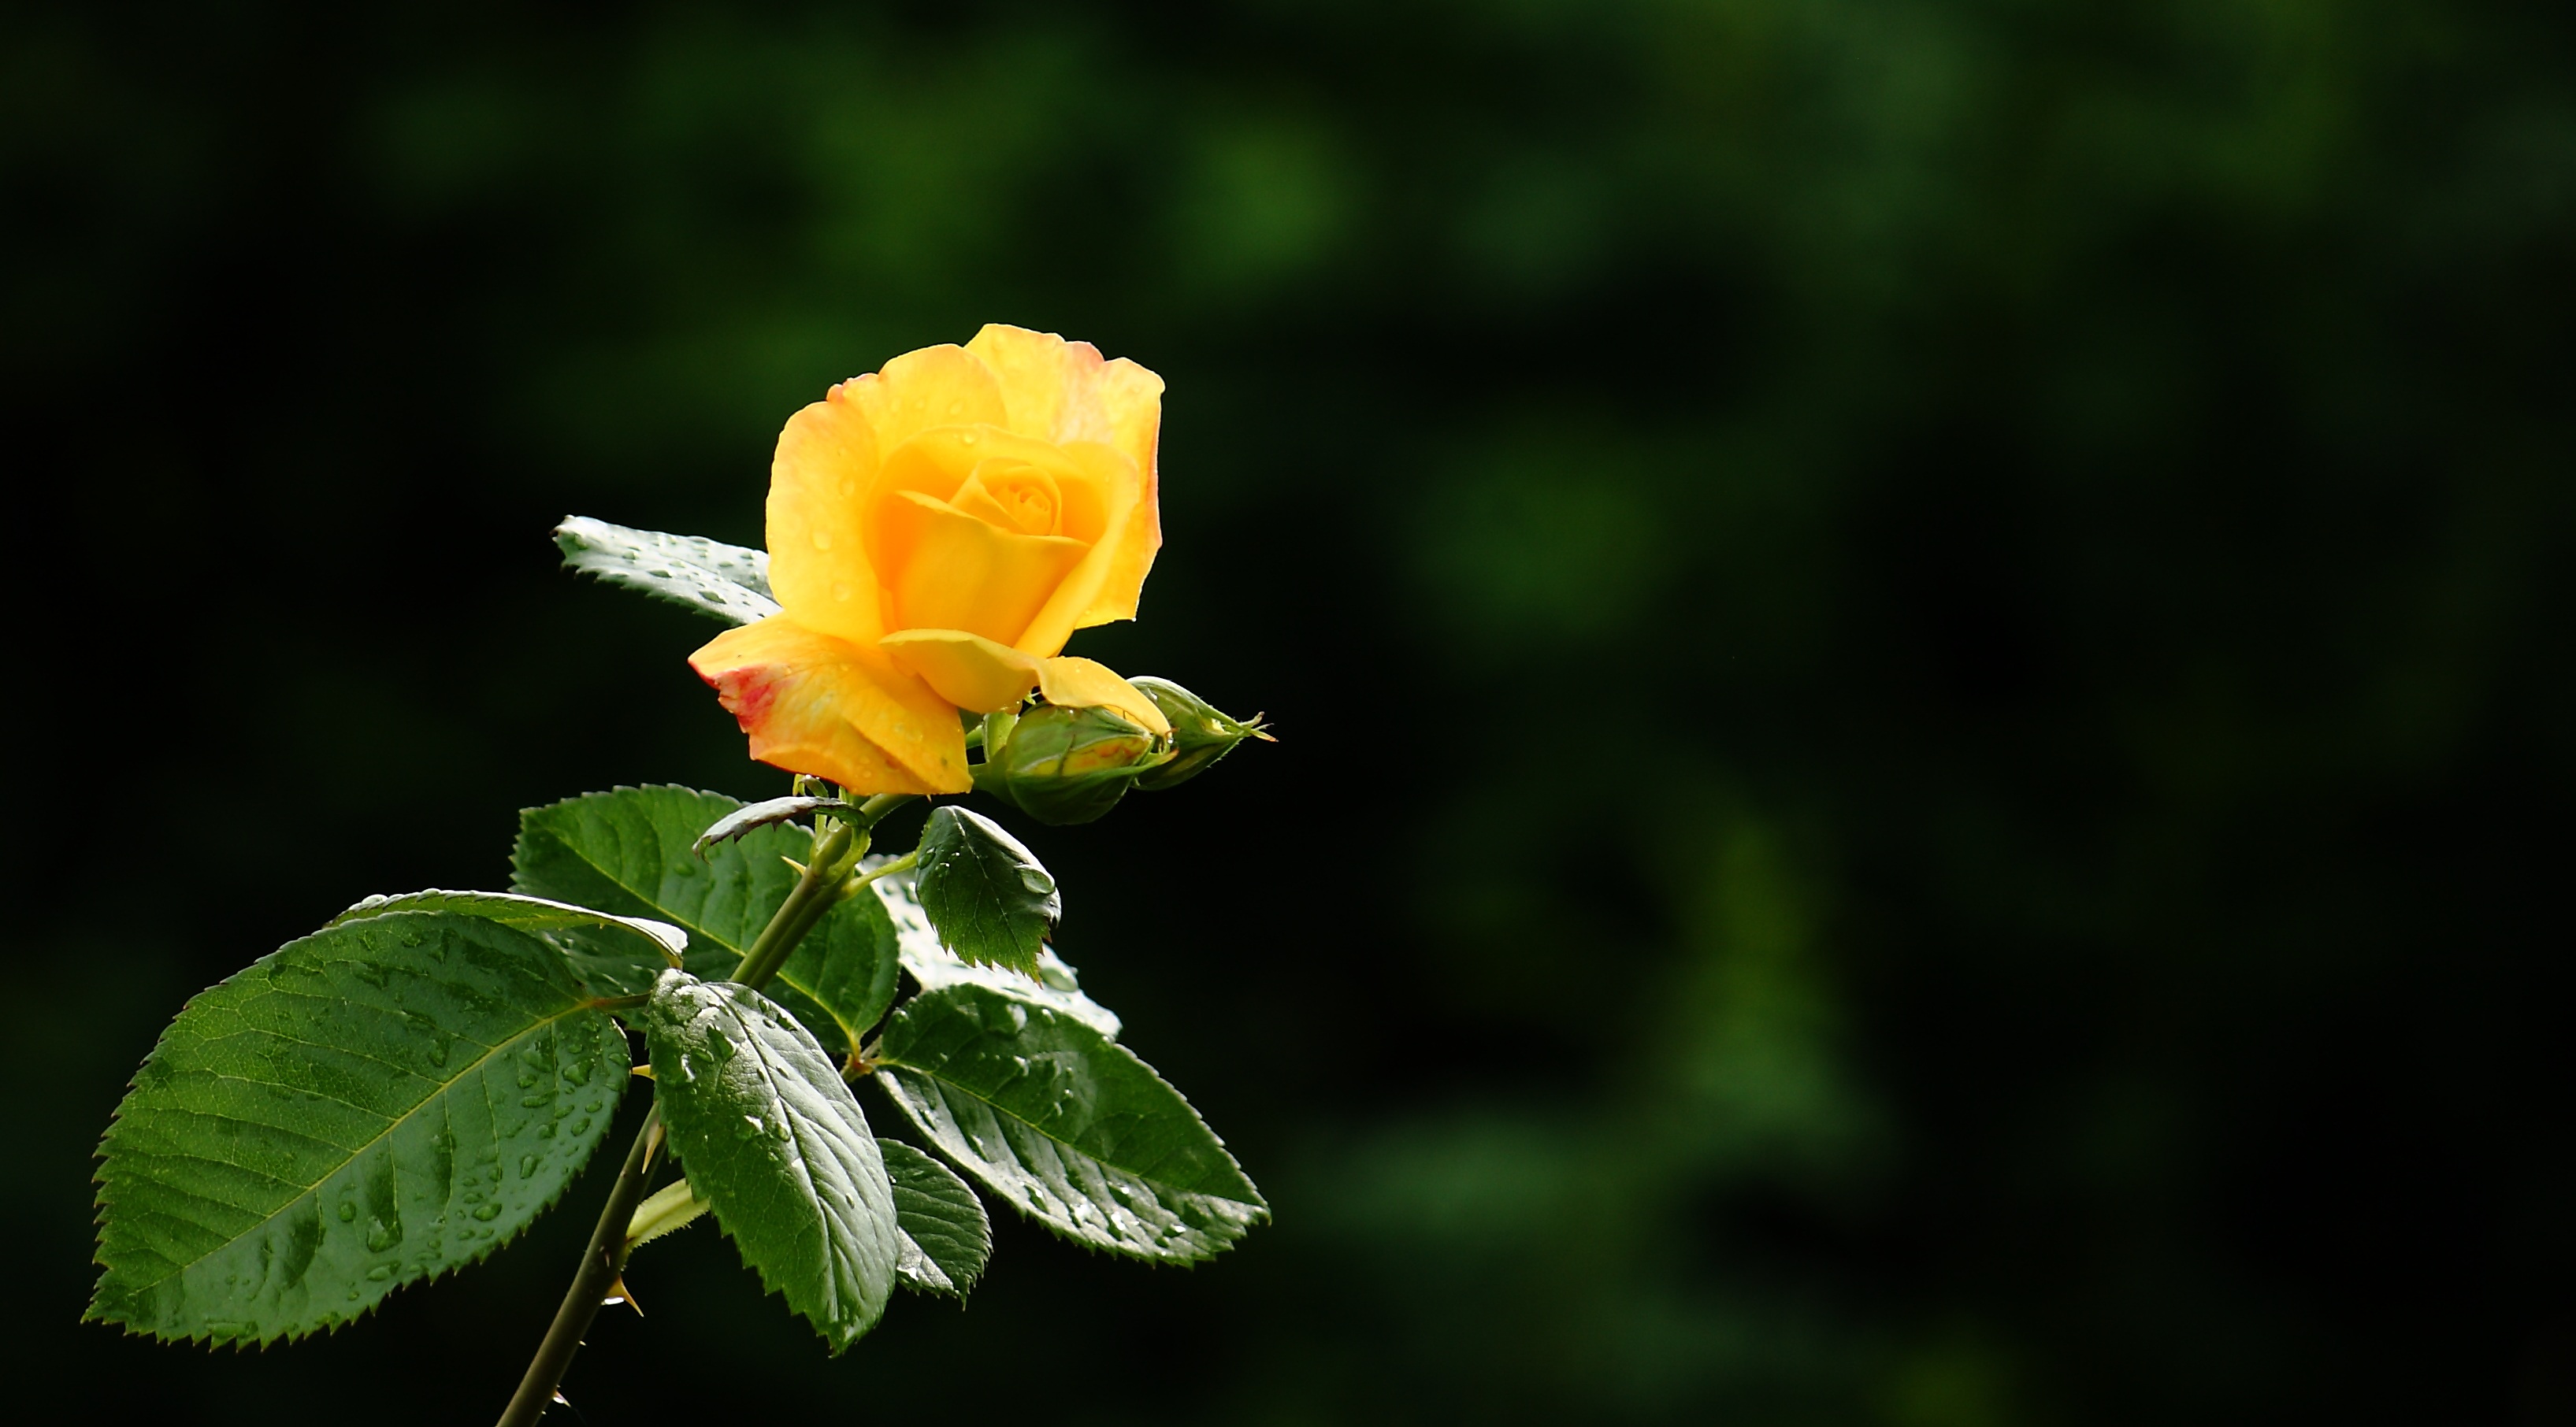 بک گراند فوق العاده قشنگ از شاخه گل رز زرد